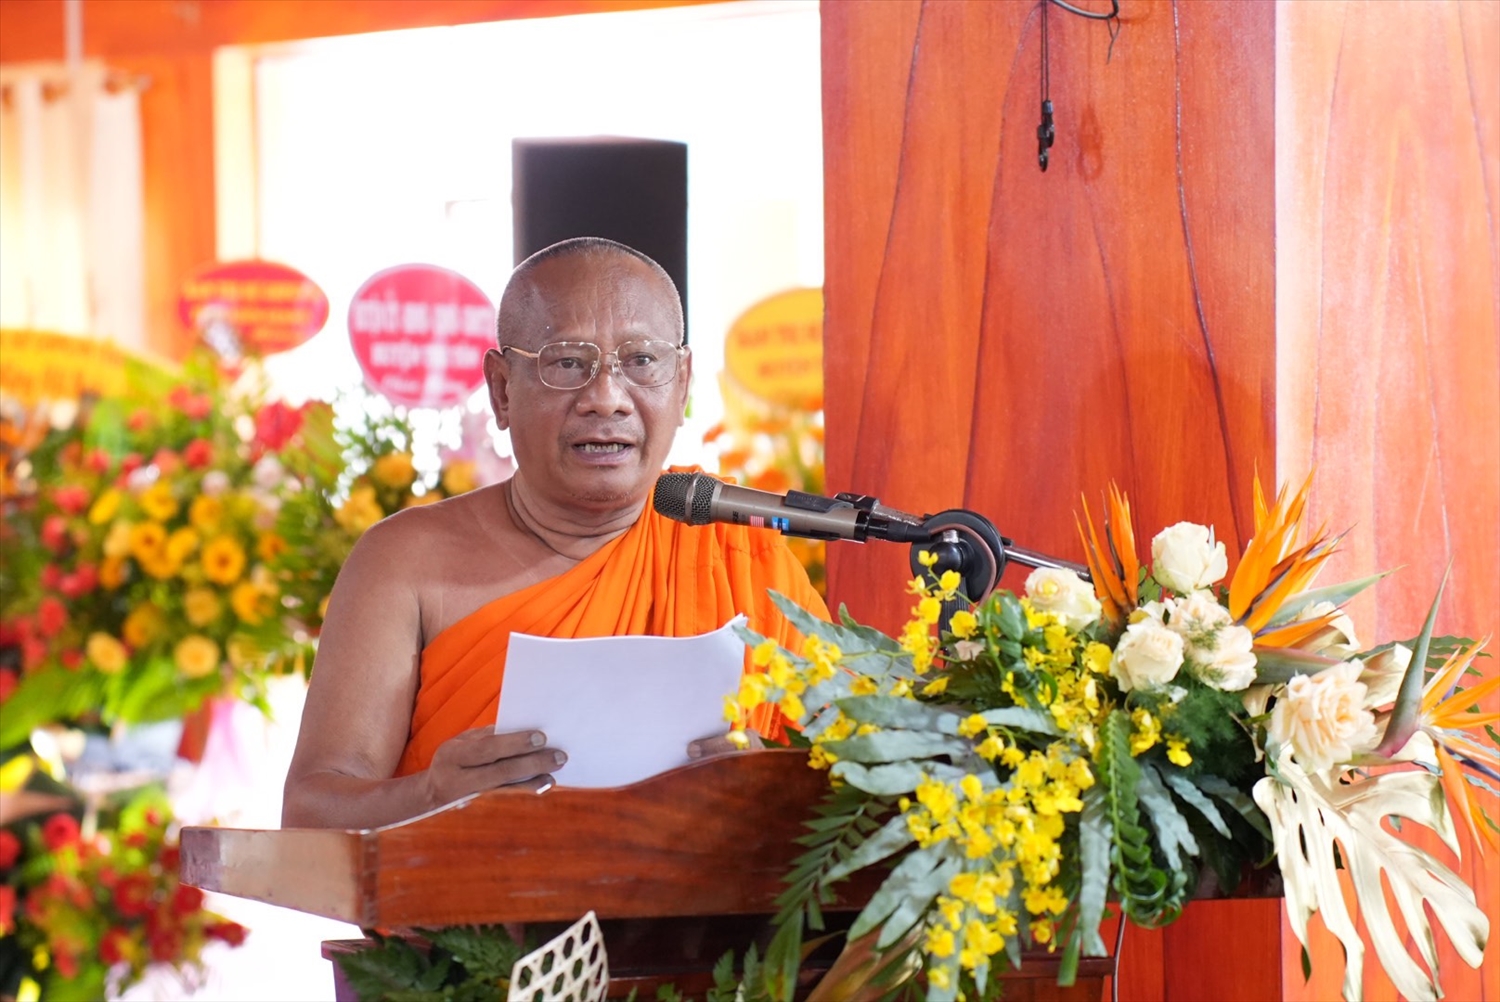 Hòa thượng Danh Lung – Ủy viên Thư ký HĐTS, Viện trưởng Phân viện Nghiên cứu Phật giáo Nam Tông Khmer phát biểu đề dẫn 